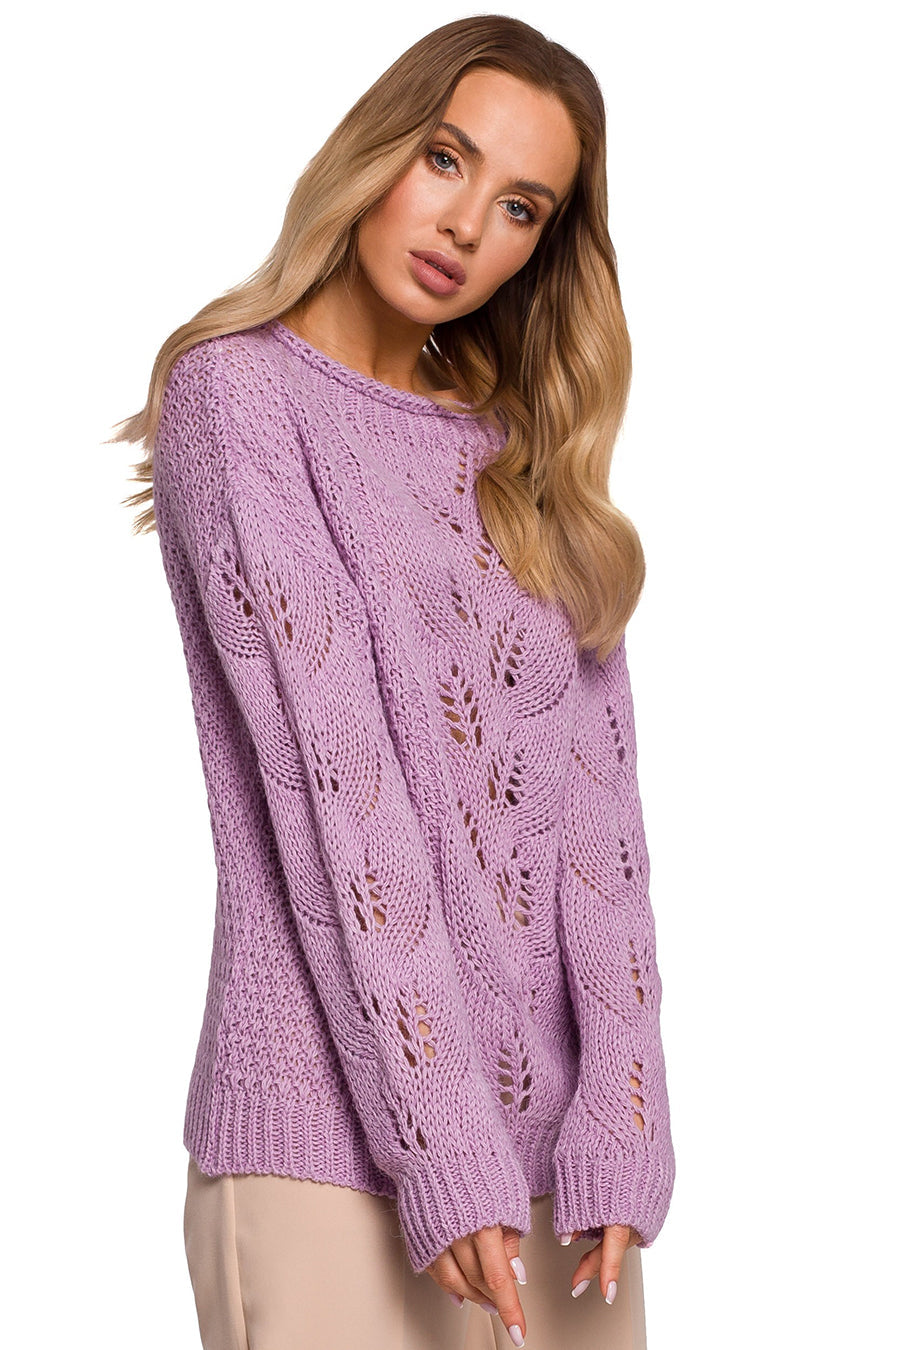 Дамски пуловер Keren, Лилав 3